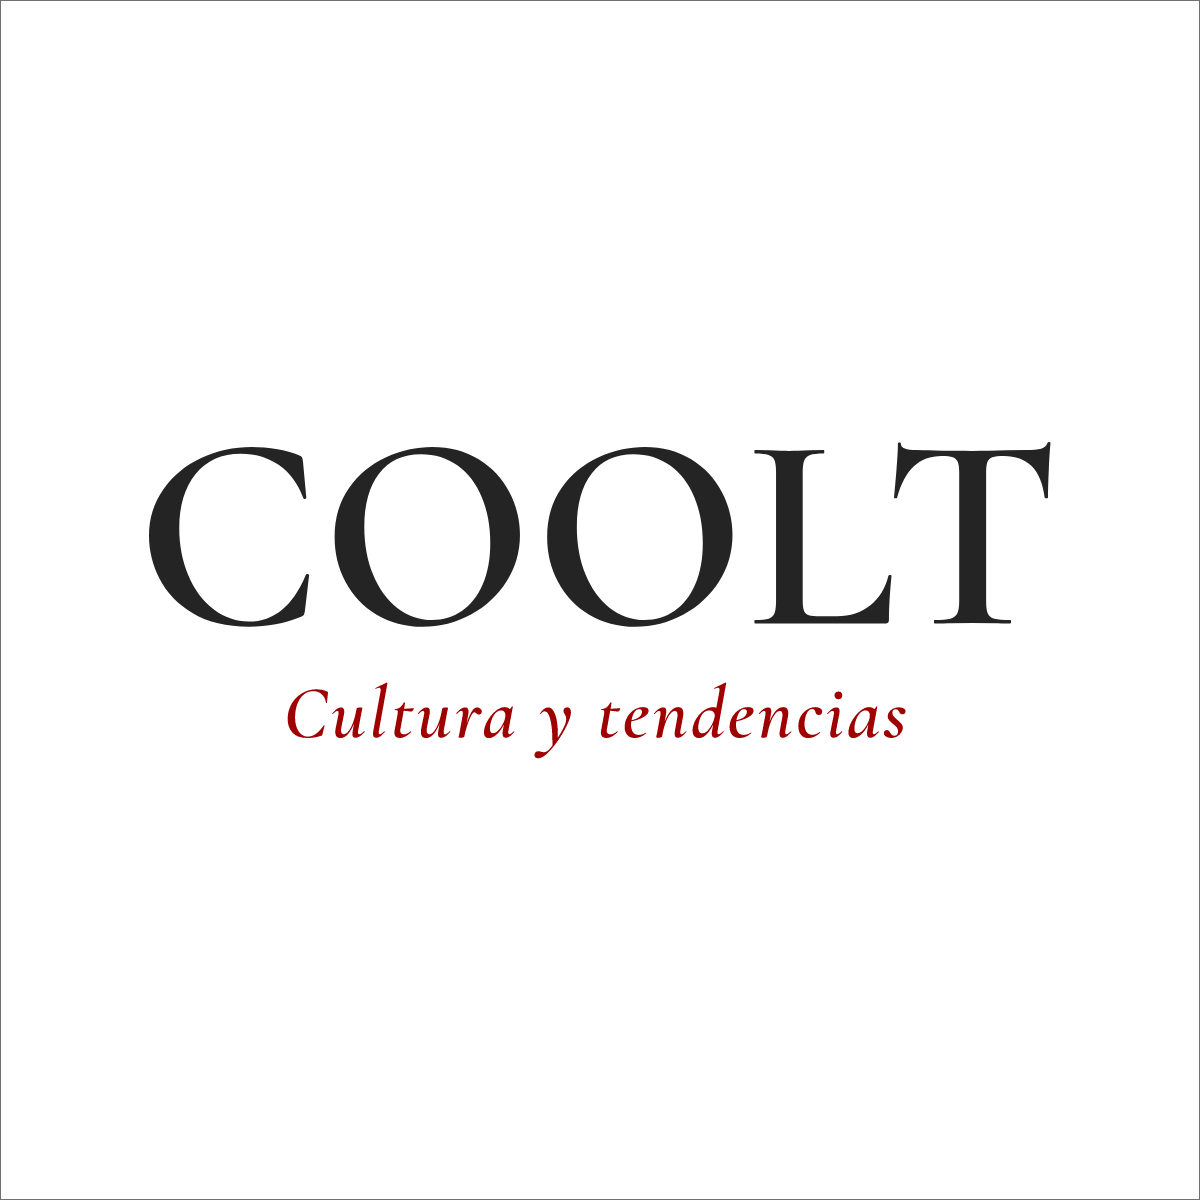 COOLT - Cultura y tendencias